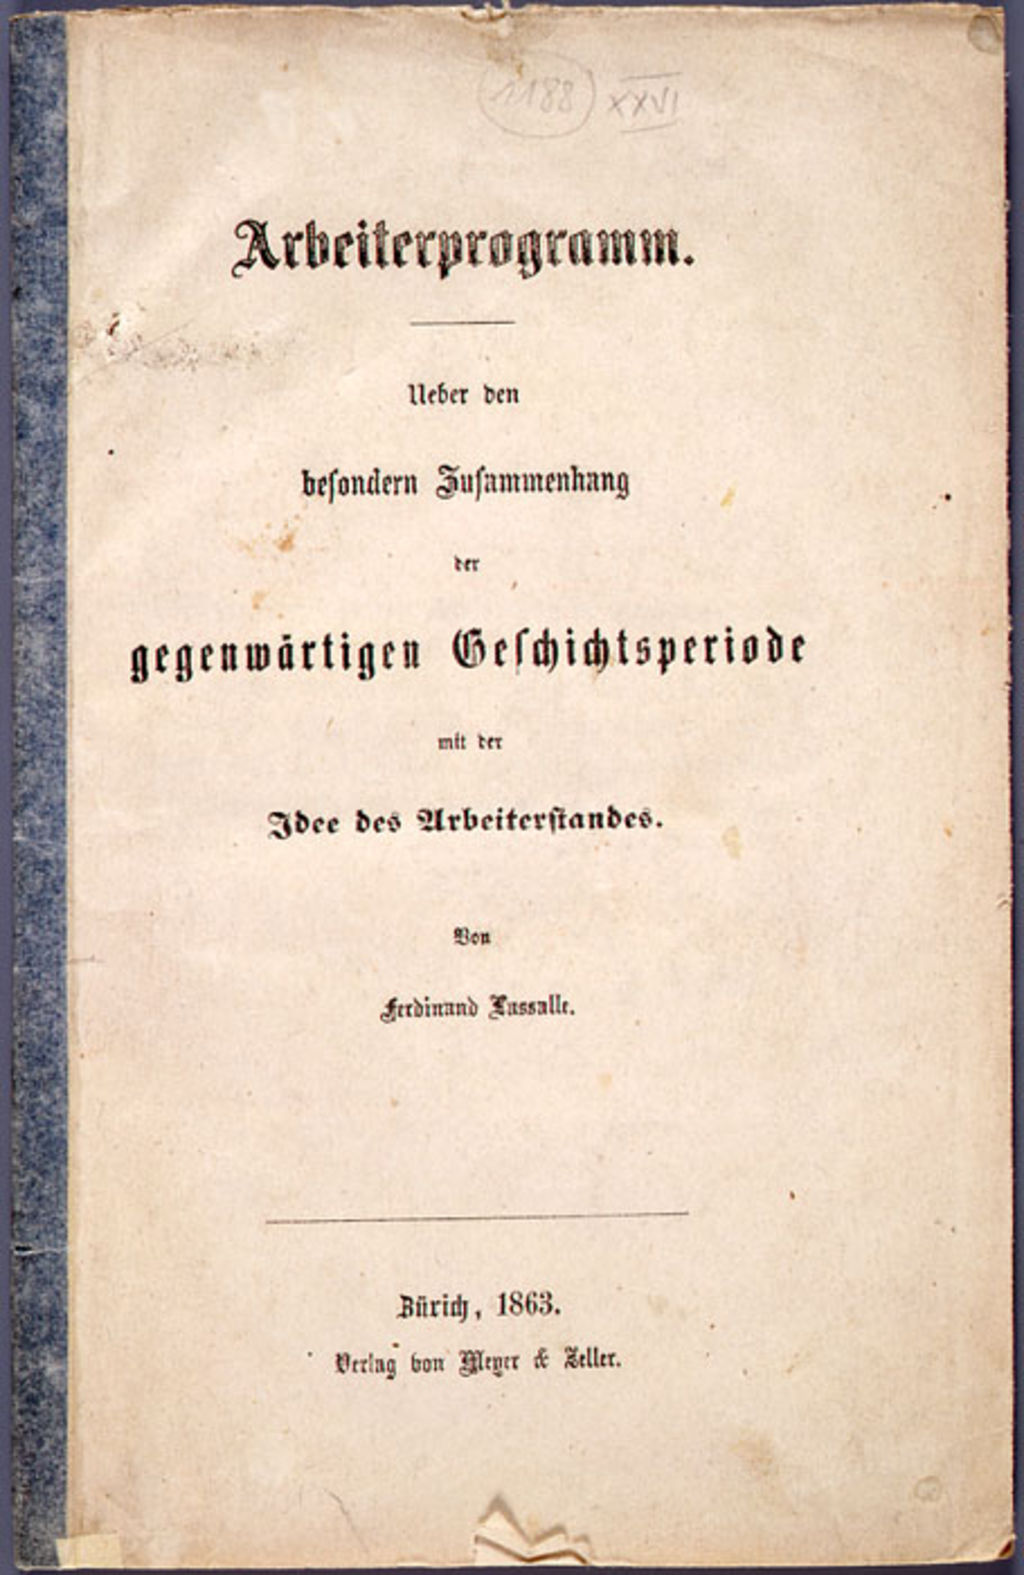 Druckschrift: Ferdinand Lassalle, "Arbeiterprogramm", 1863